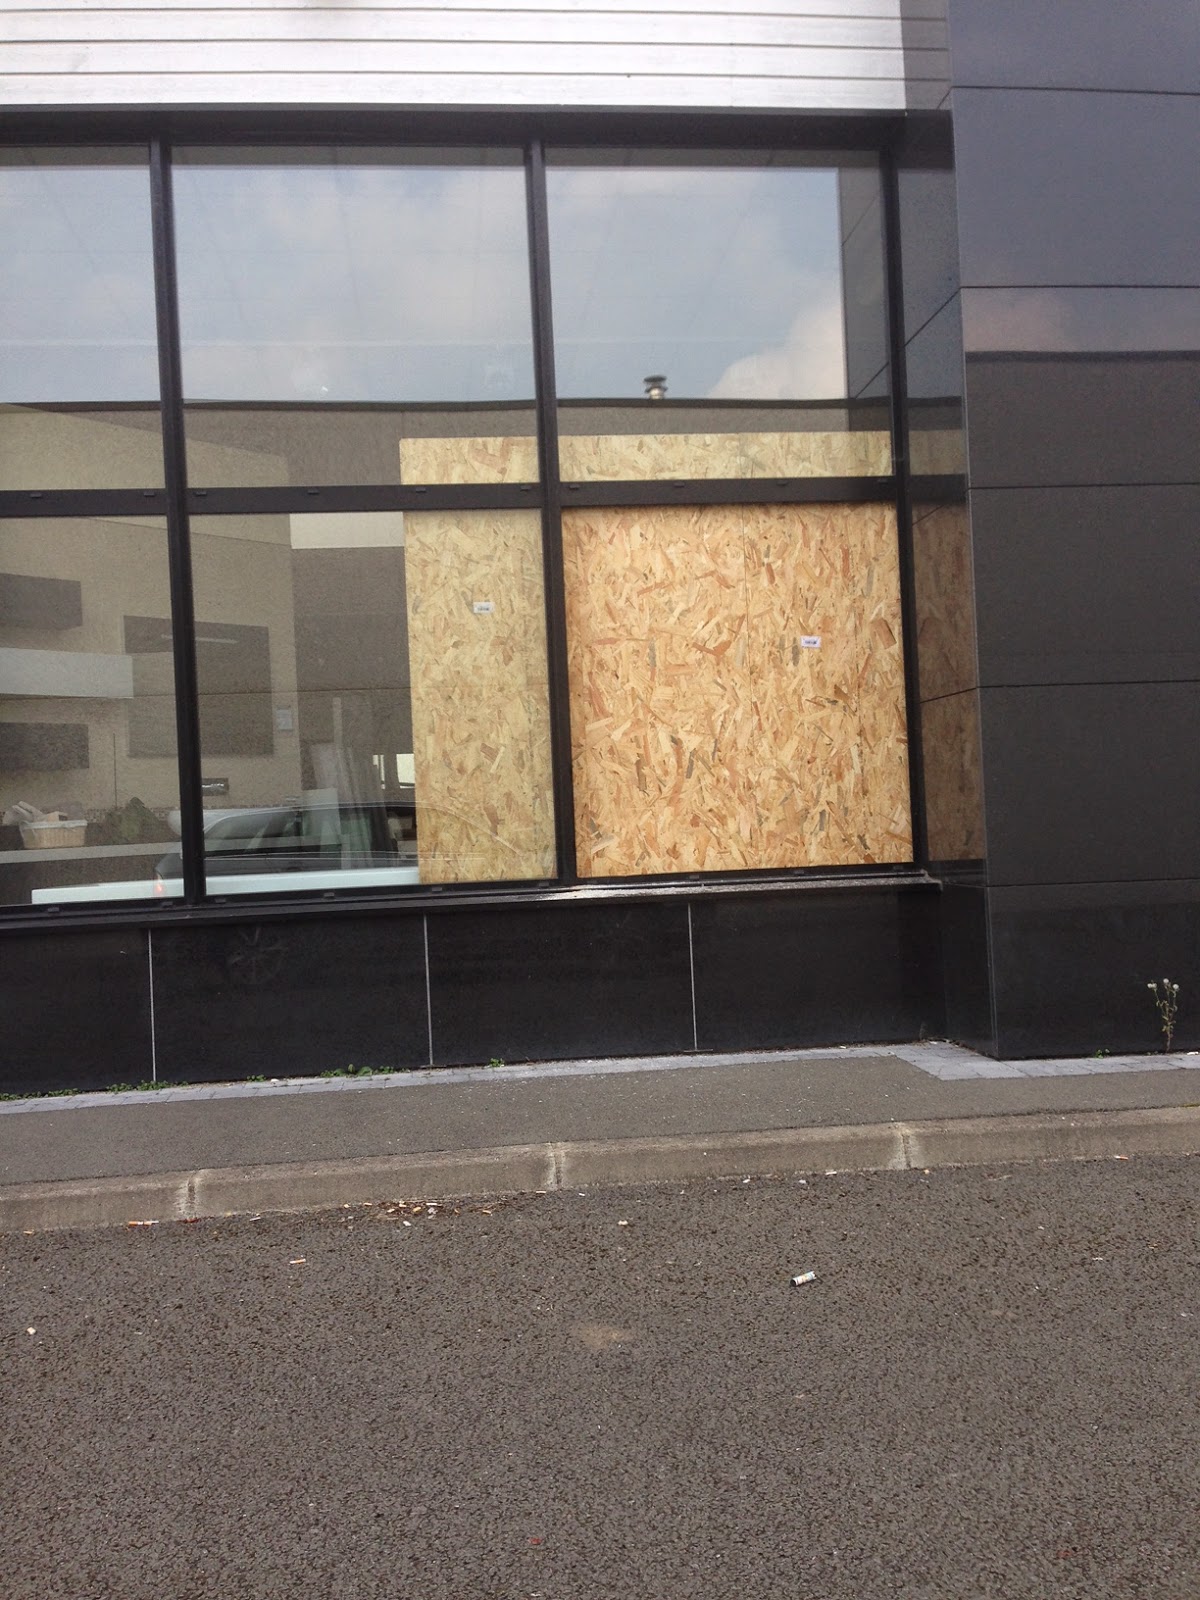 Fermeture provisoire d'une baie vitrée vandalisée sur Lille avant son remplacement.